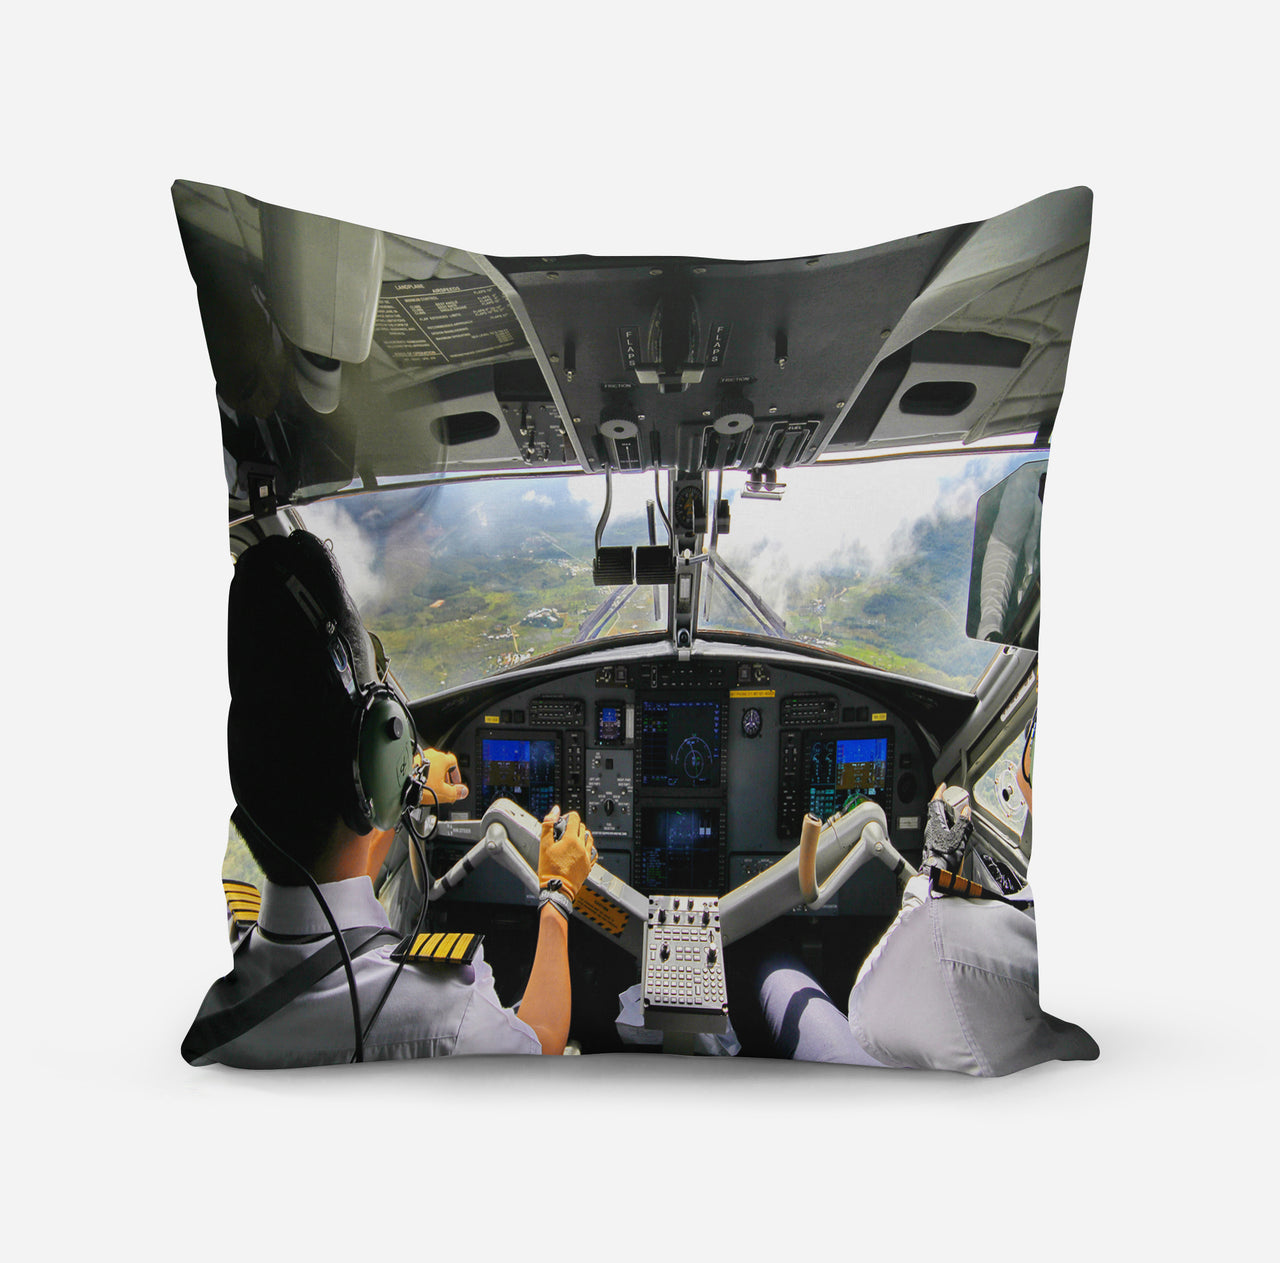 Fantastic Cockpit Shot Designed Pillows